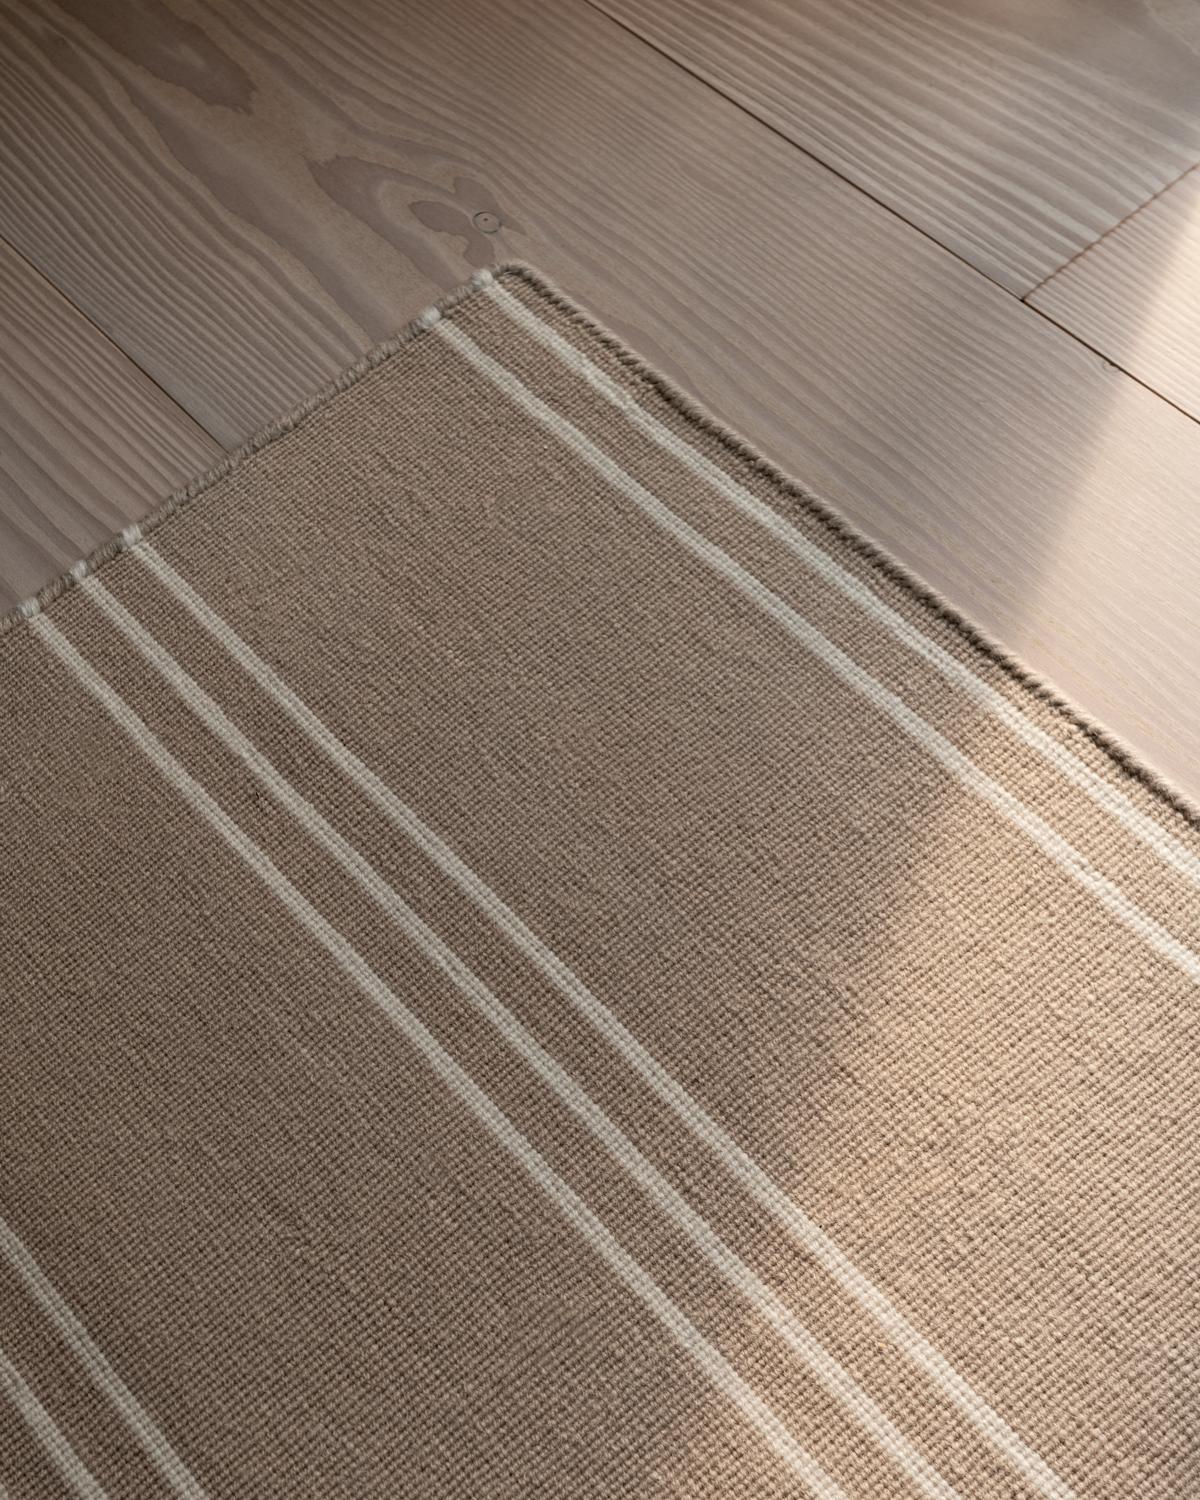 Stripes gray/cream est un tapis moderne en Dhurrie/Kilim au design scandinave.
Veuillez noter que les délais de livraison peuvent varier selon la taille et vont de 6 jours à 9 semaines.

Les rayures à motif de briques donnent au tapis une